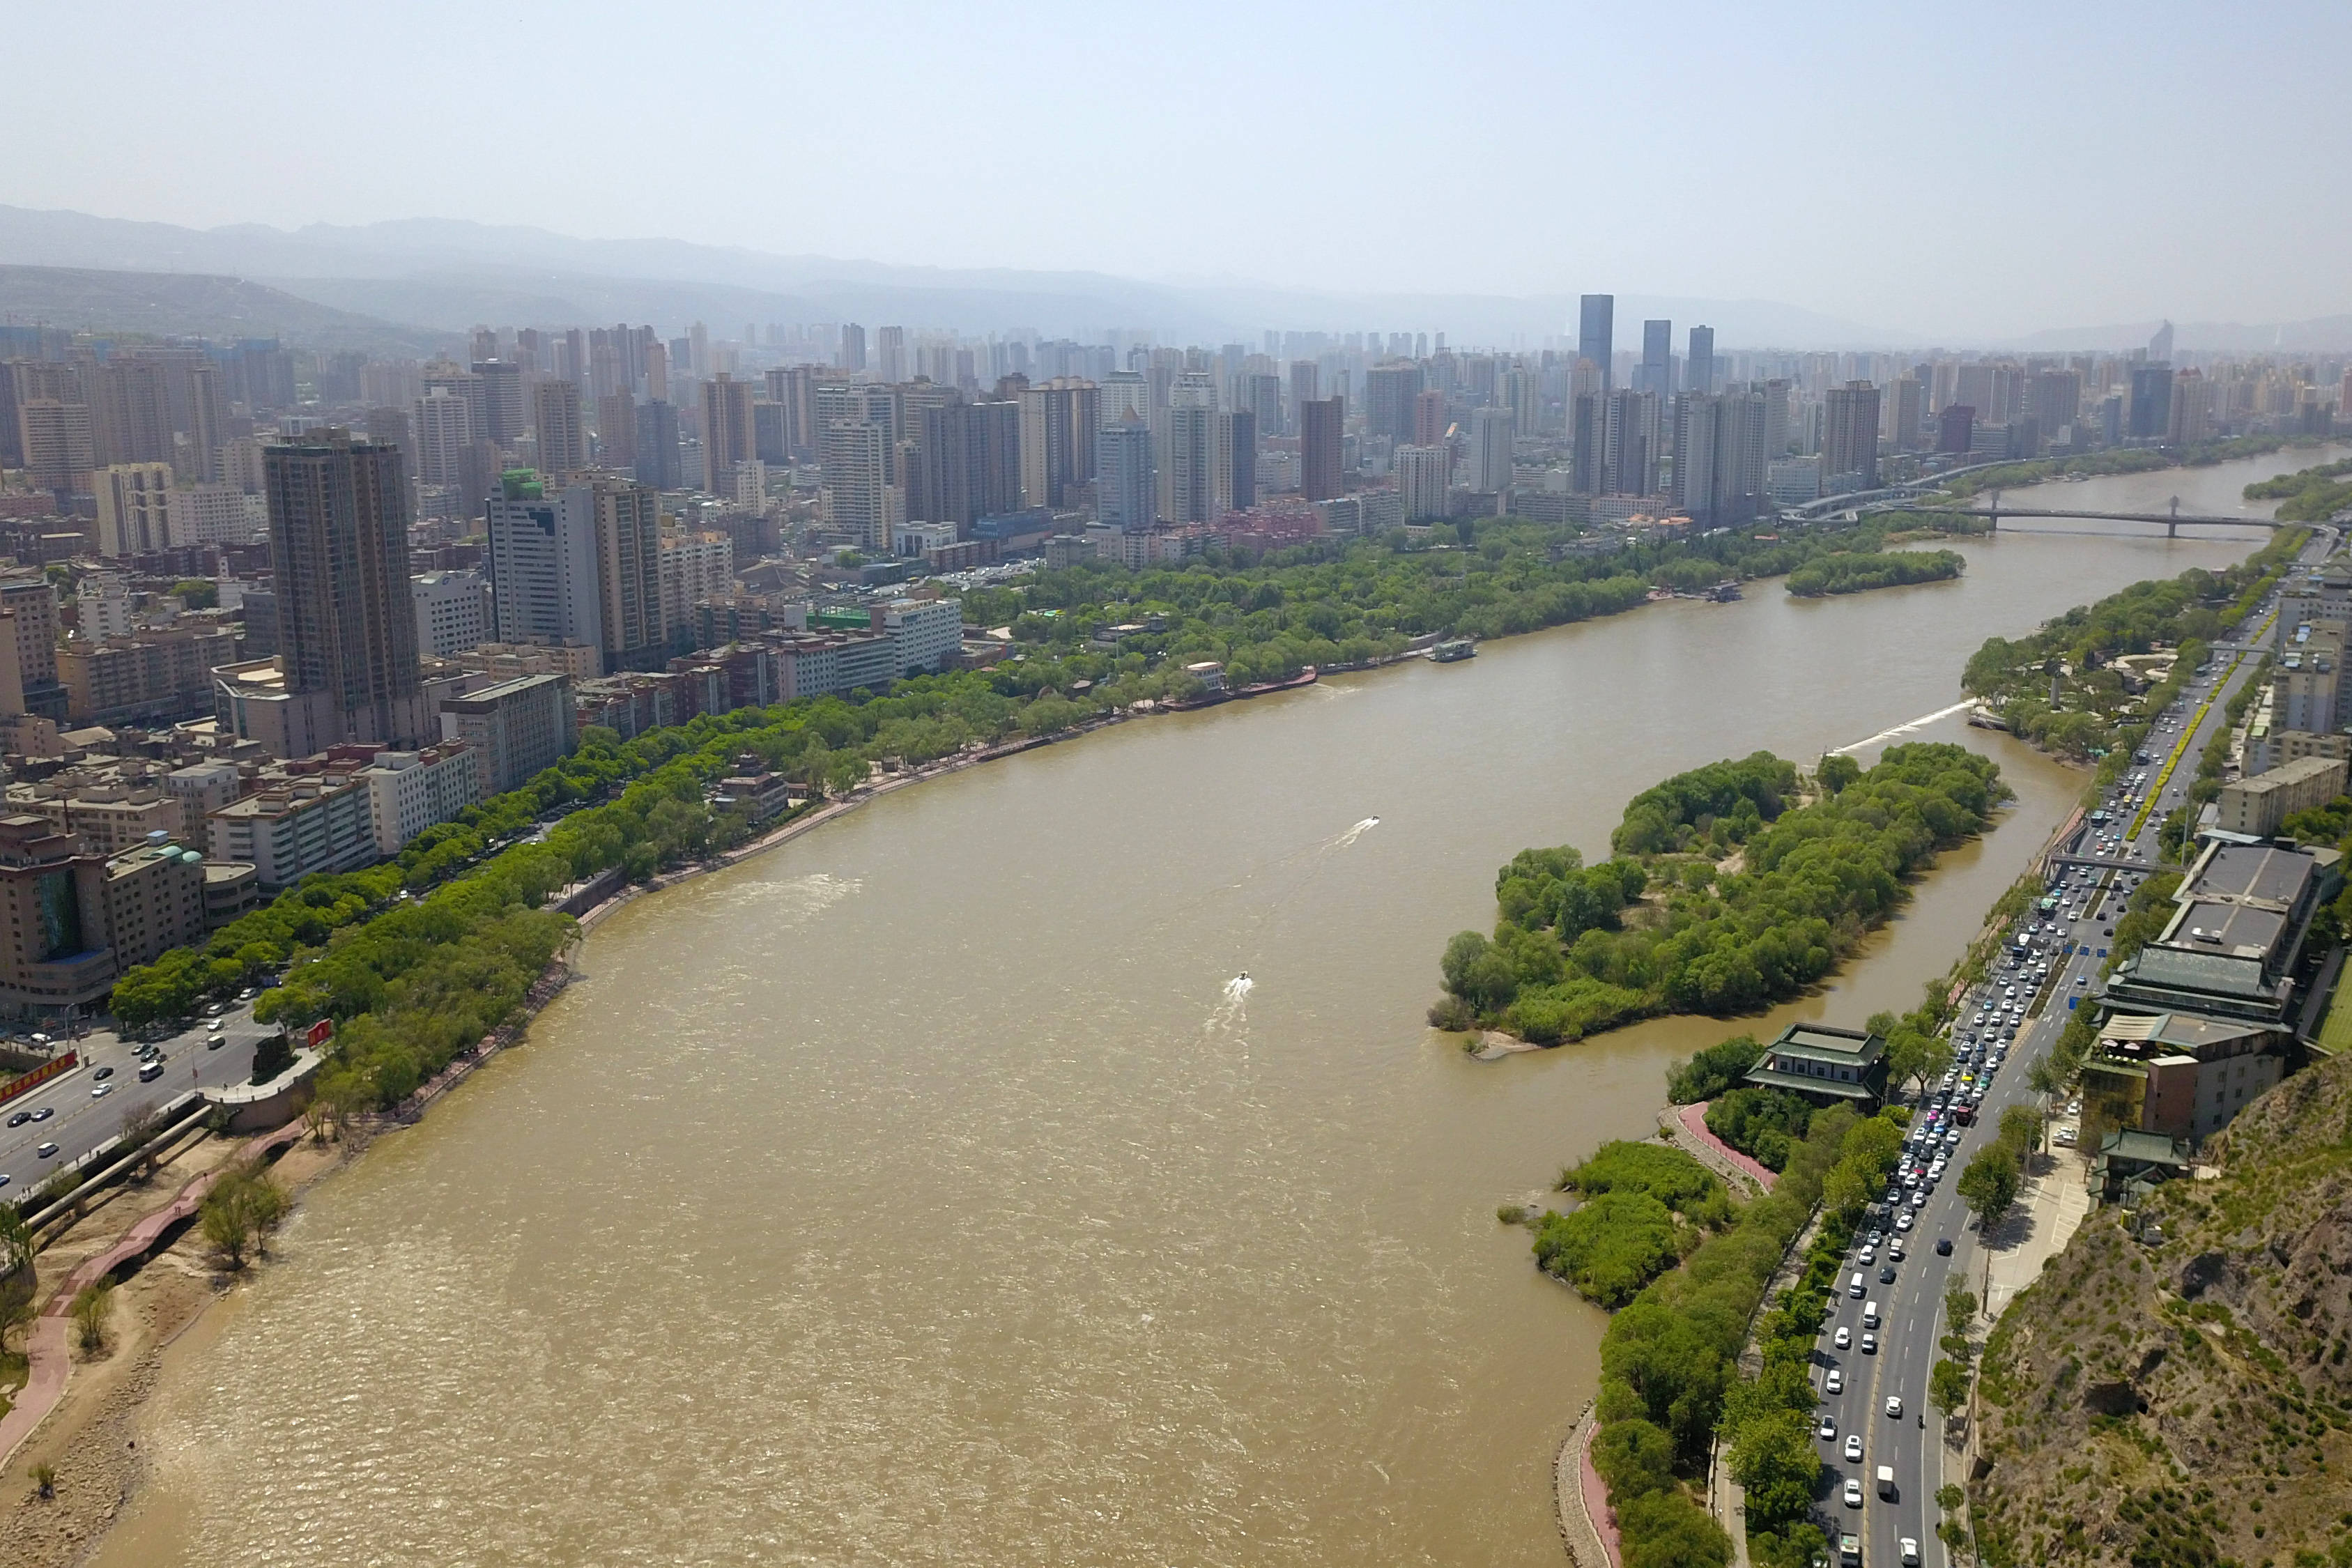 这是5月8日拍摄的黄河兰州段景色(无人机照片).